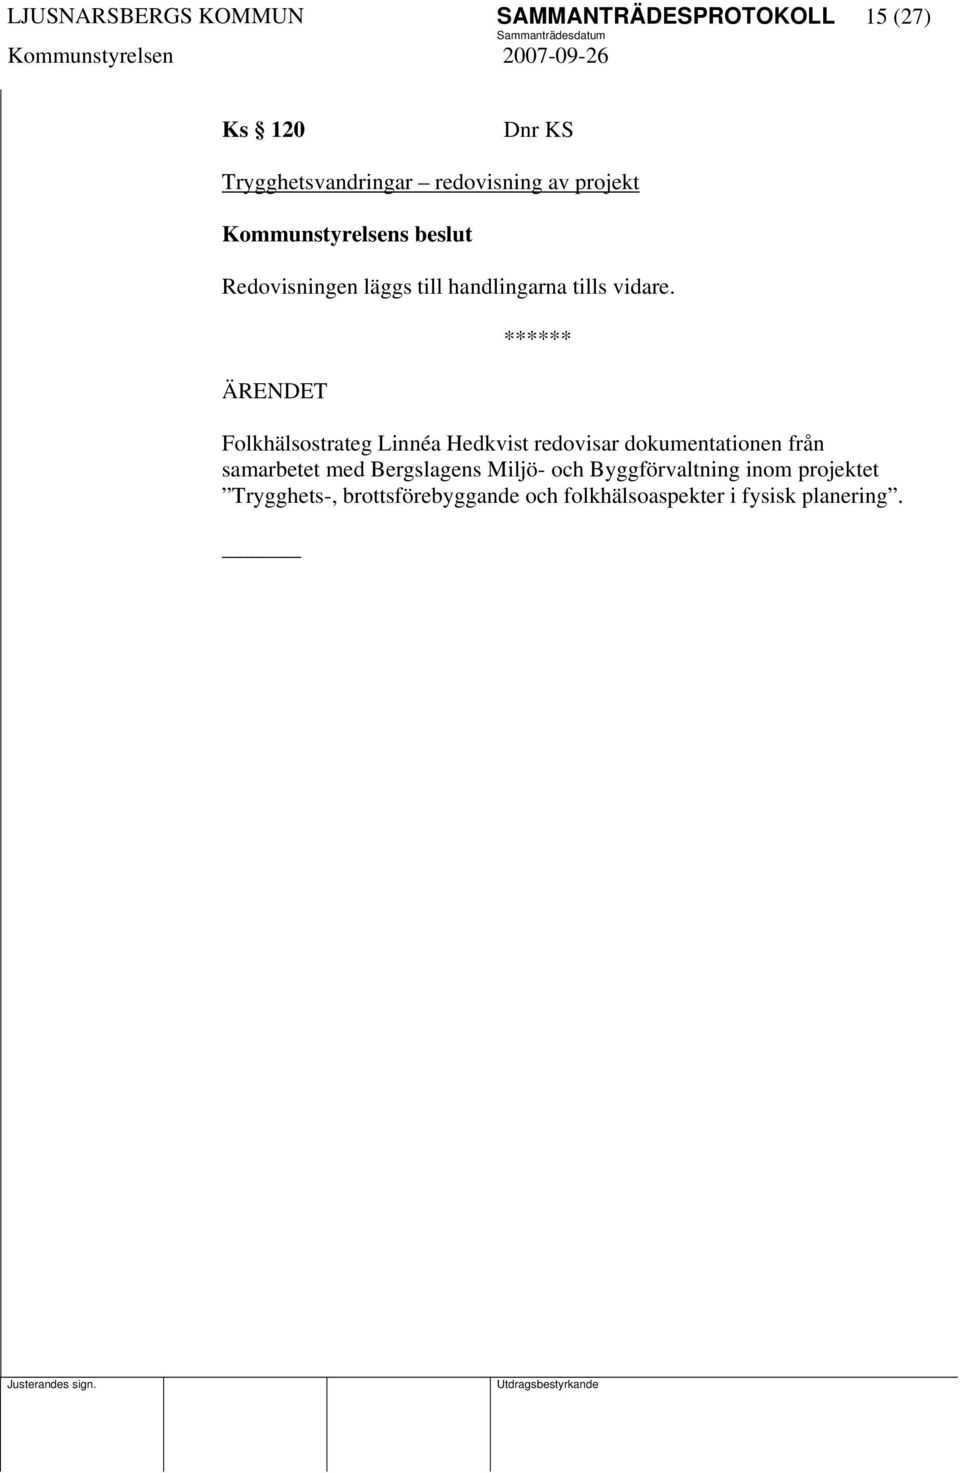 Folkhälsostrateg Linnéa Hedkvist redovisar dokumentationen från samarbetet med Bergslagens Miljö-